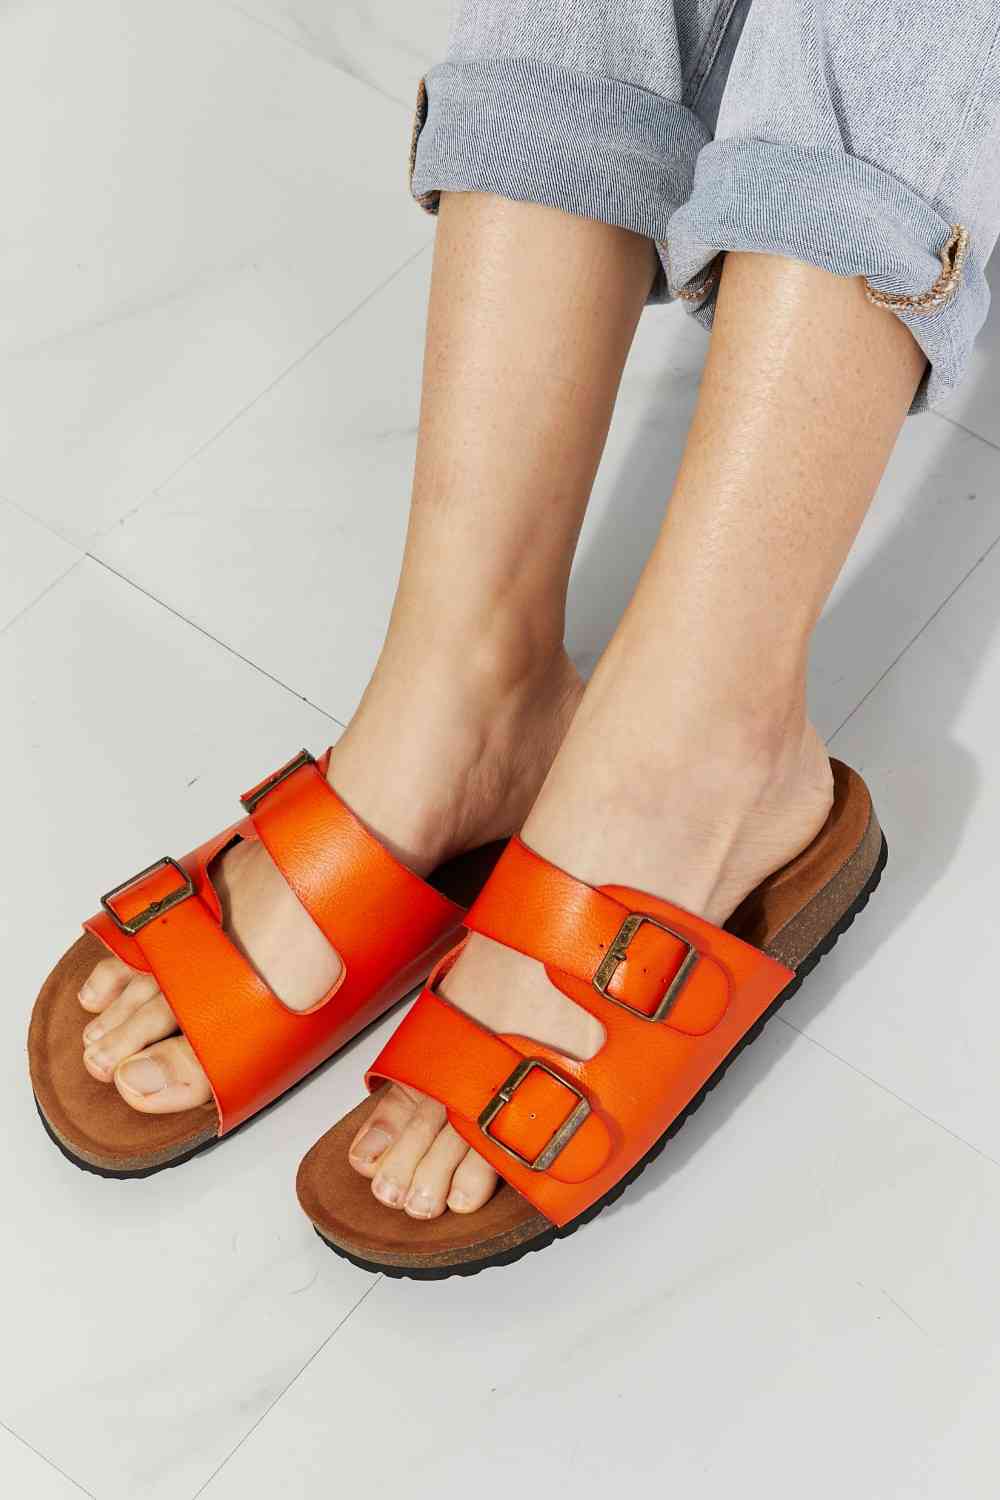 MMShoes Feeling Alive Double Banded Slide Sandals in Orange No 3